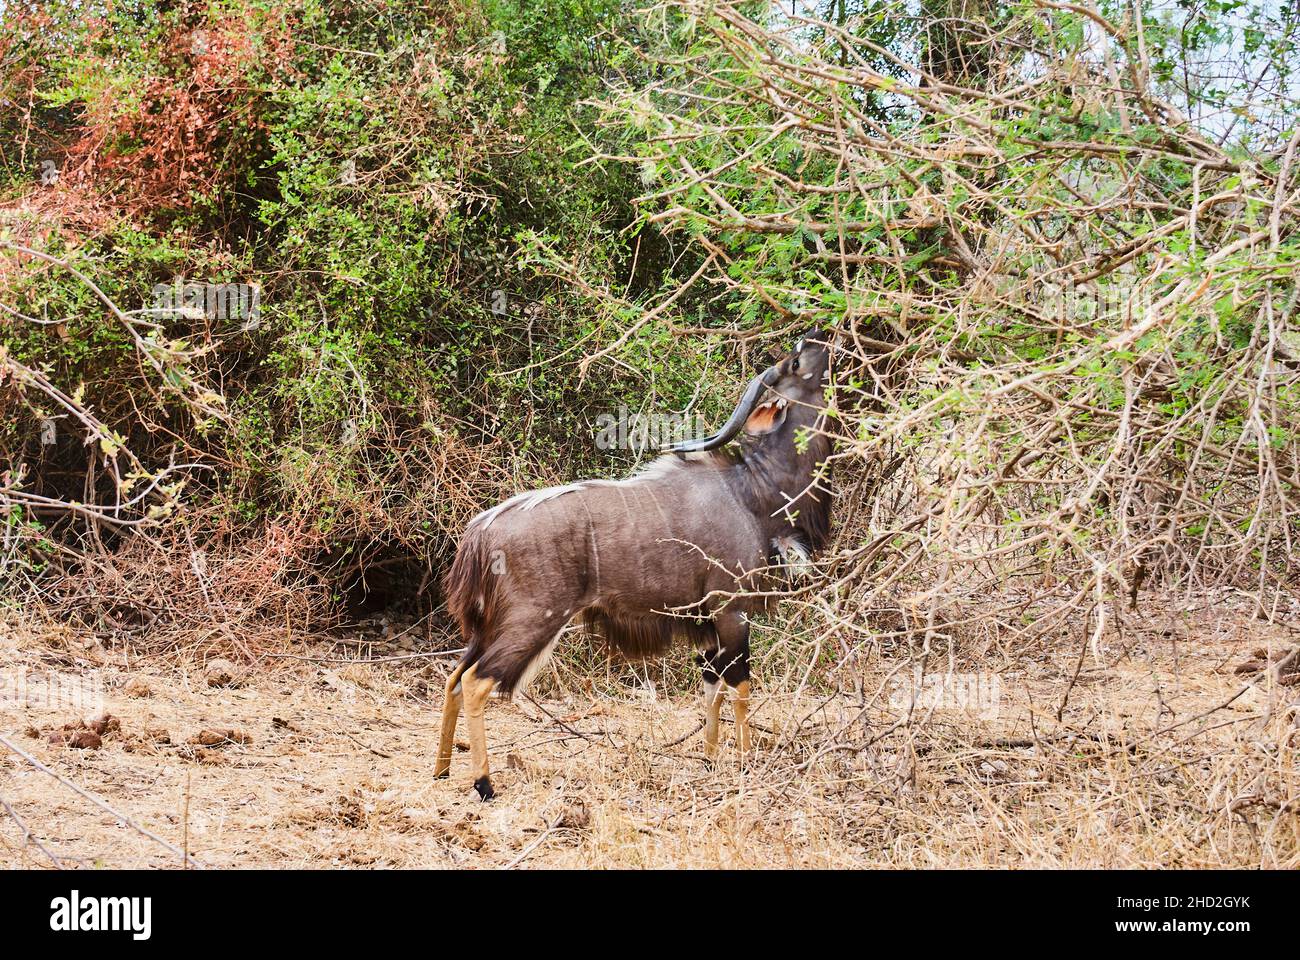 Der starke und stolze Nyala-Bulle, Tragelaphus angasii, ist eine spiralförmige gehörnte Antilope aus dem südlichen Afrika, die in der Landschaft des afrikanischen Buschs herumläuft Stockfoto